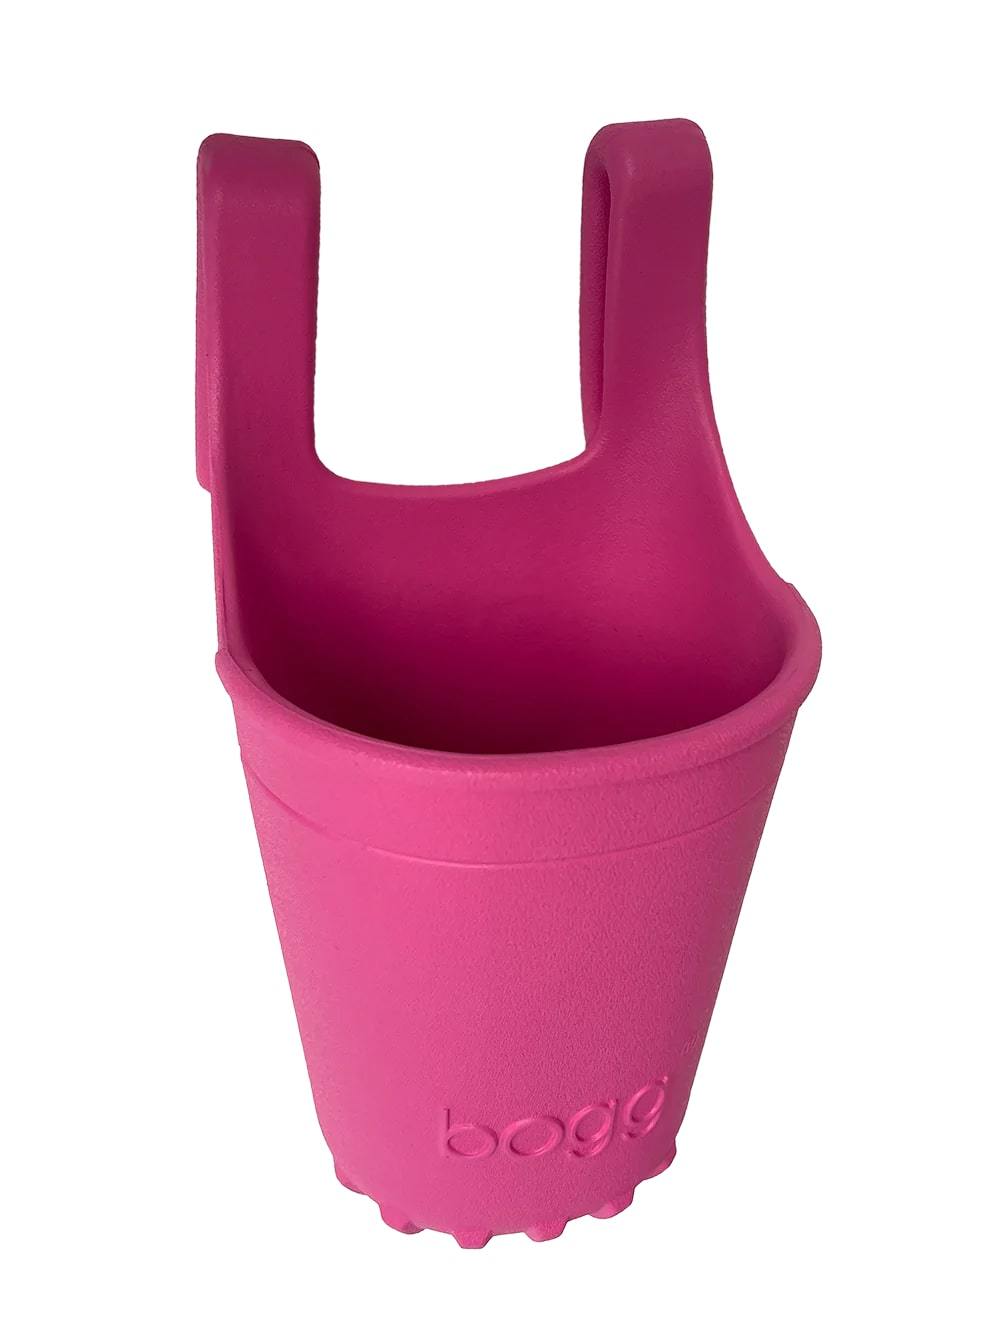 Haute PINK Bogg® Bevy Drink Holder - Image 1 - Bogg® Bag